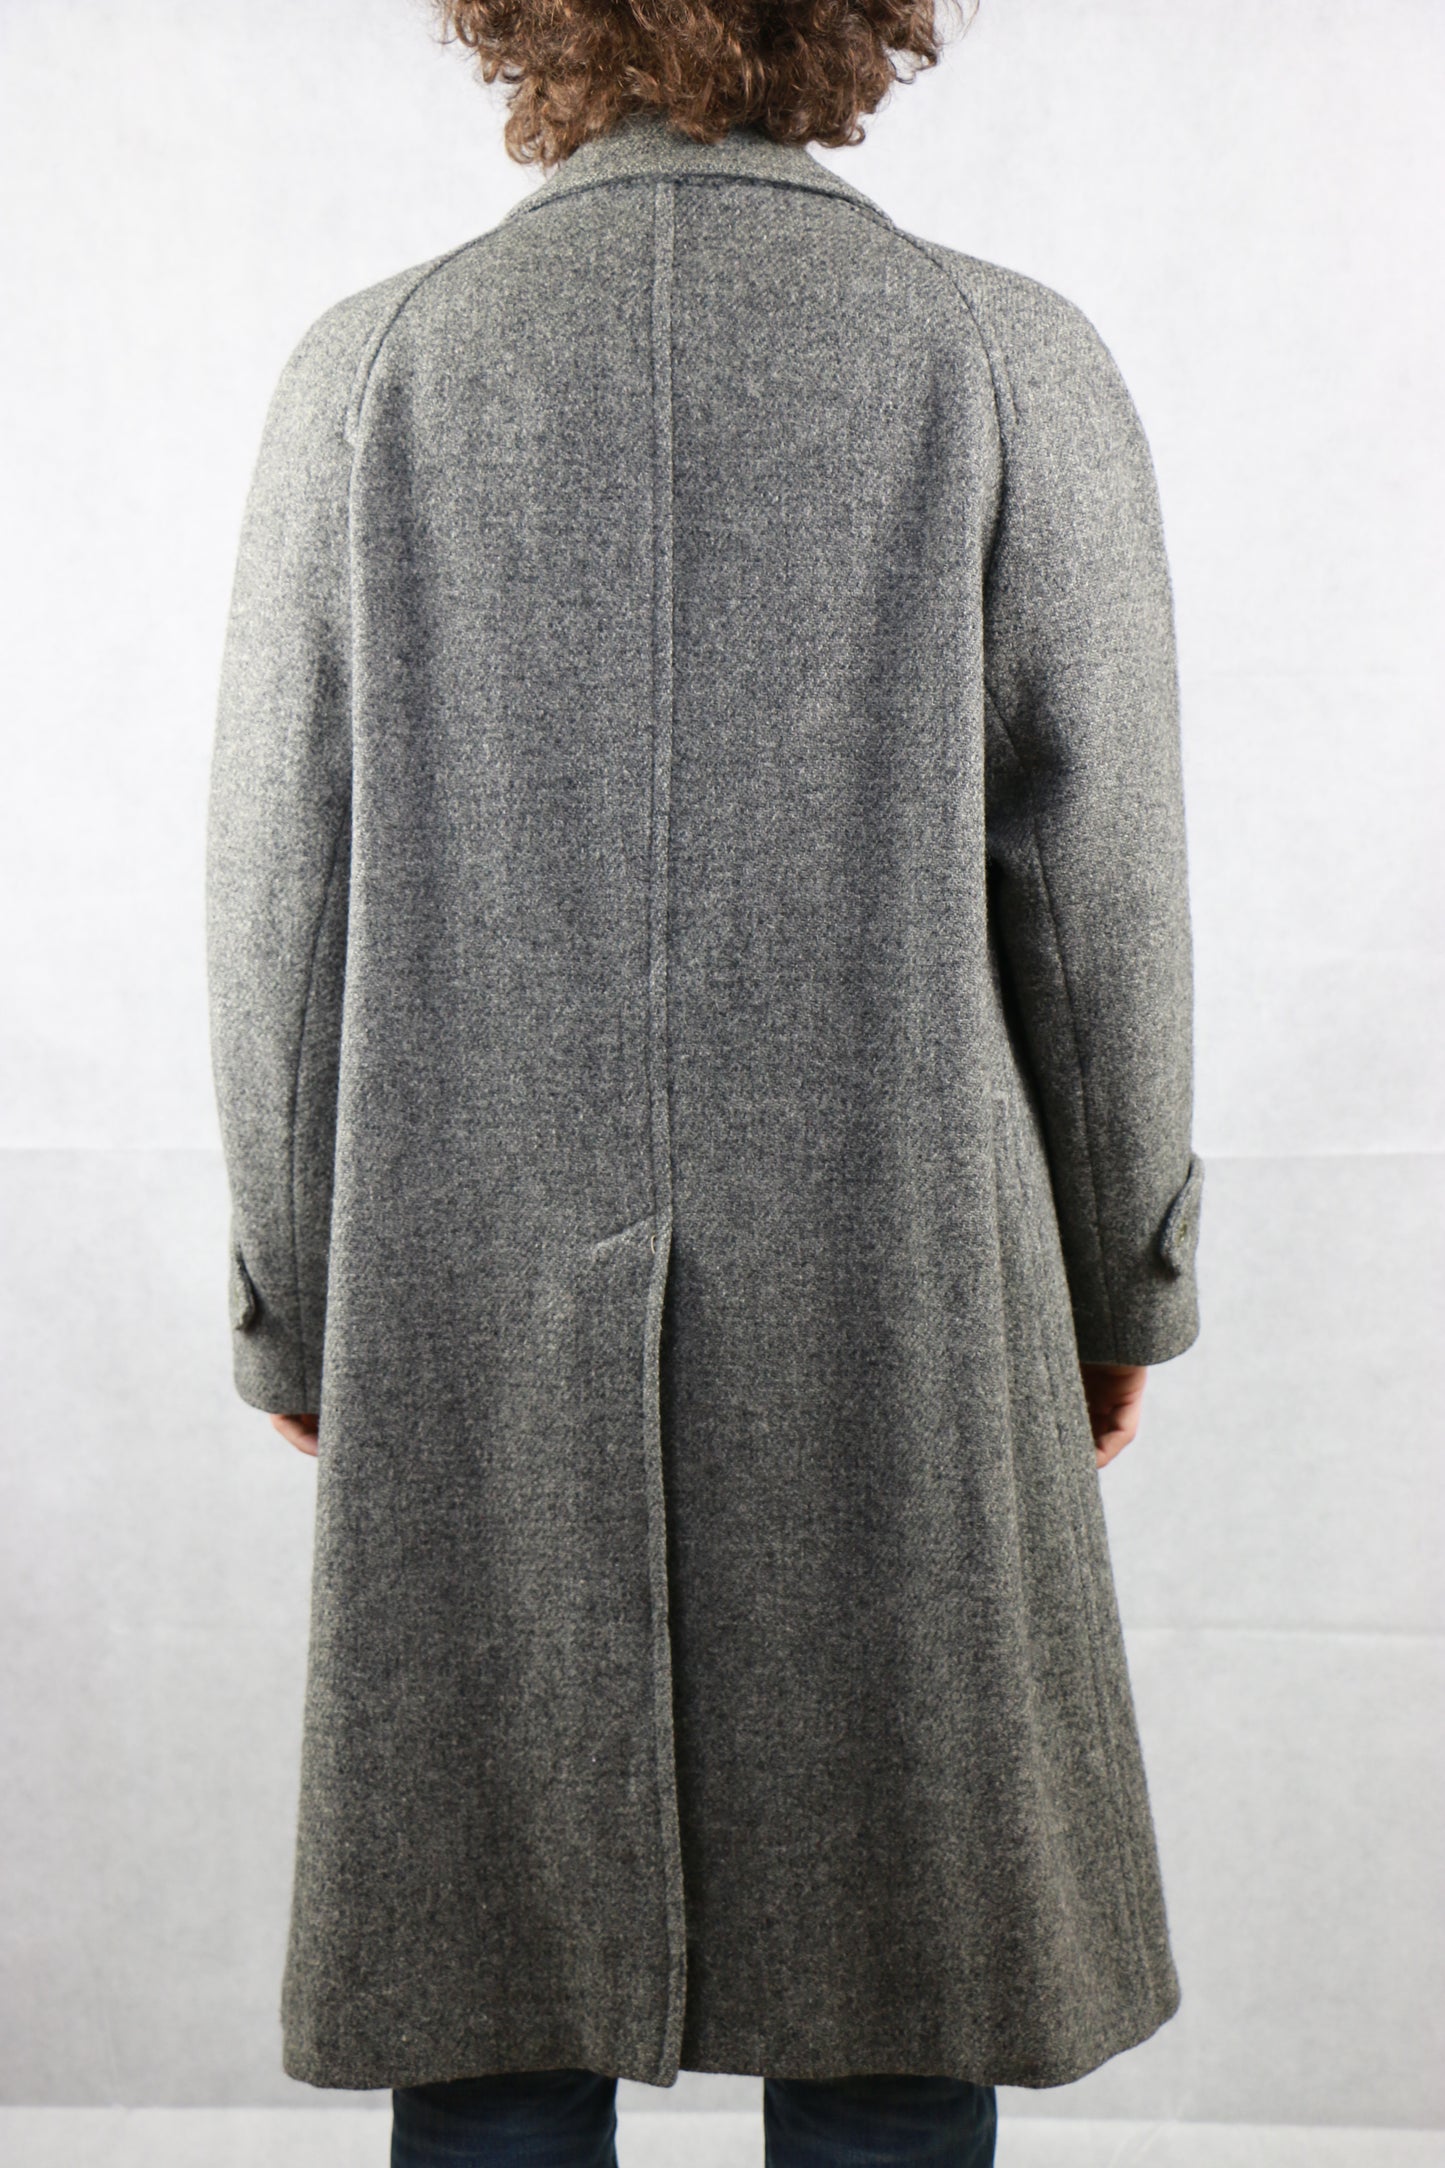 Burberrys' Harris Tweed Coat, clochard92.com